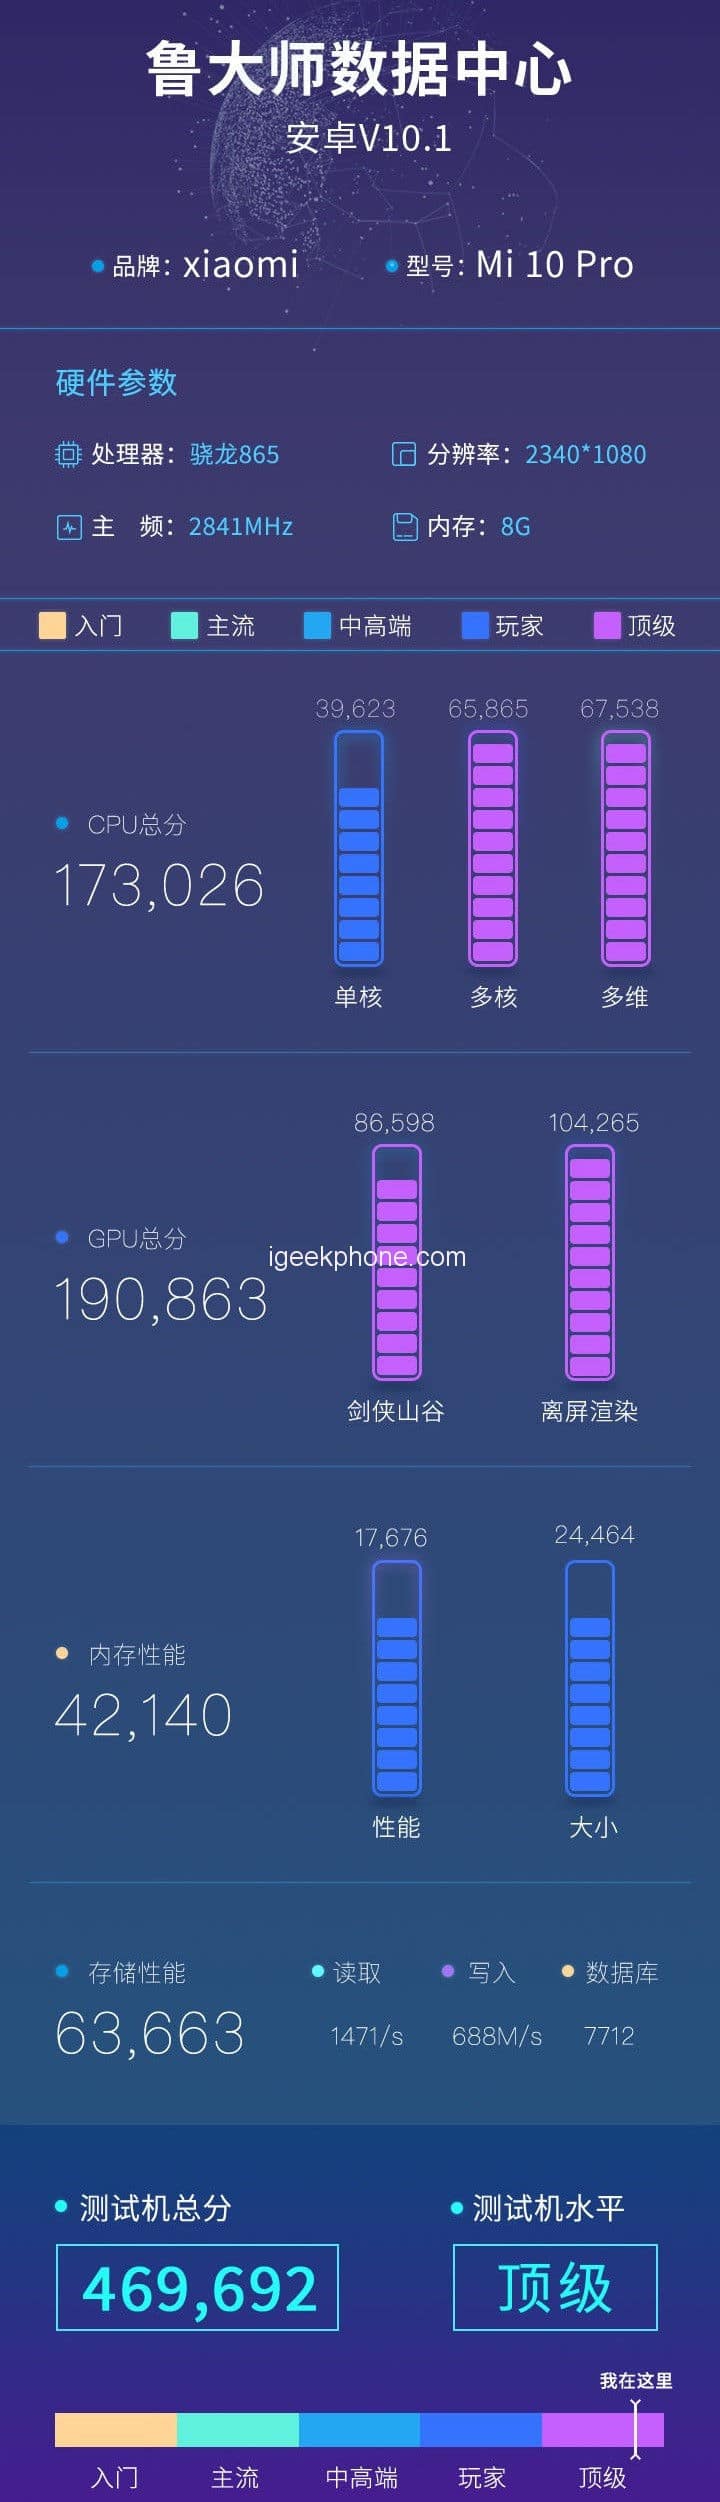 Xiaomi Mi 10 Pro Teardown igeekphone 9 1 | Techlog.gr - Χρήσιμα νέα τεχνολογίας